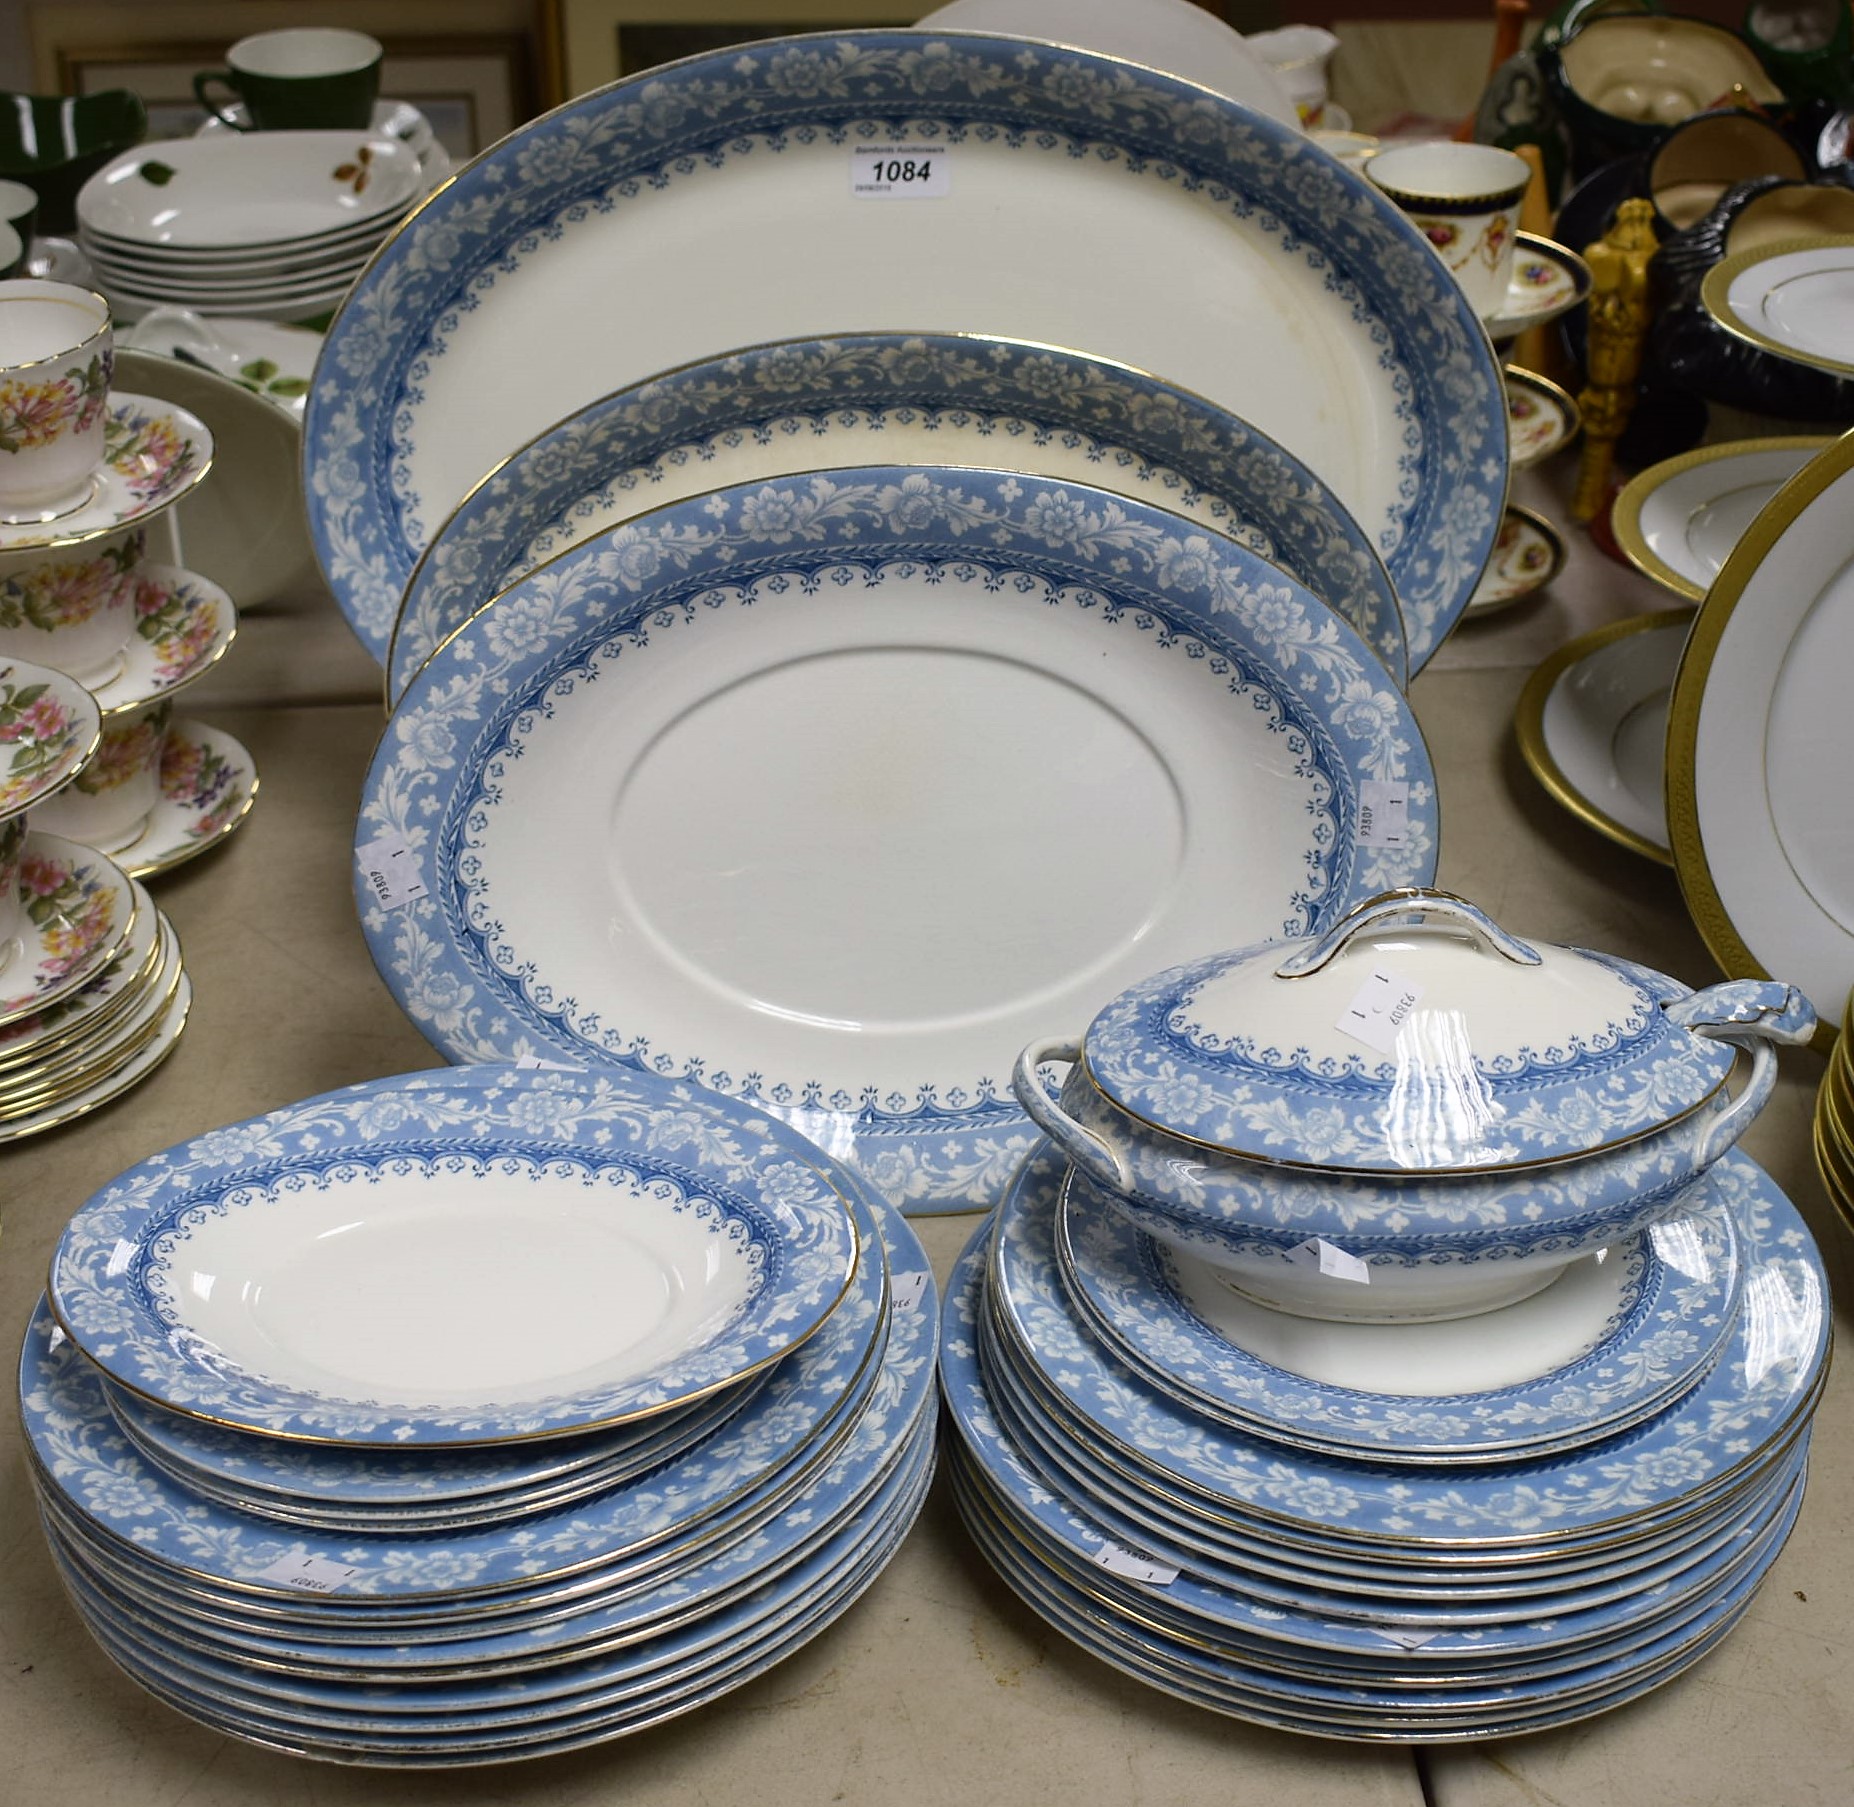 Ceramics - a John Maddock and Sons Delhi pattern dinner service,